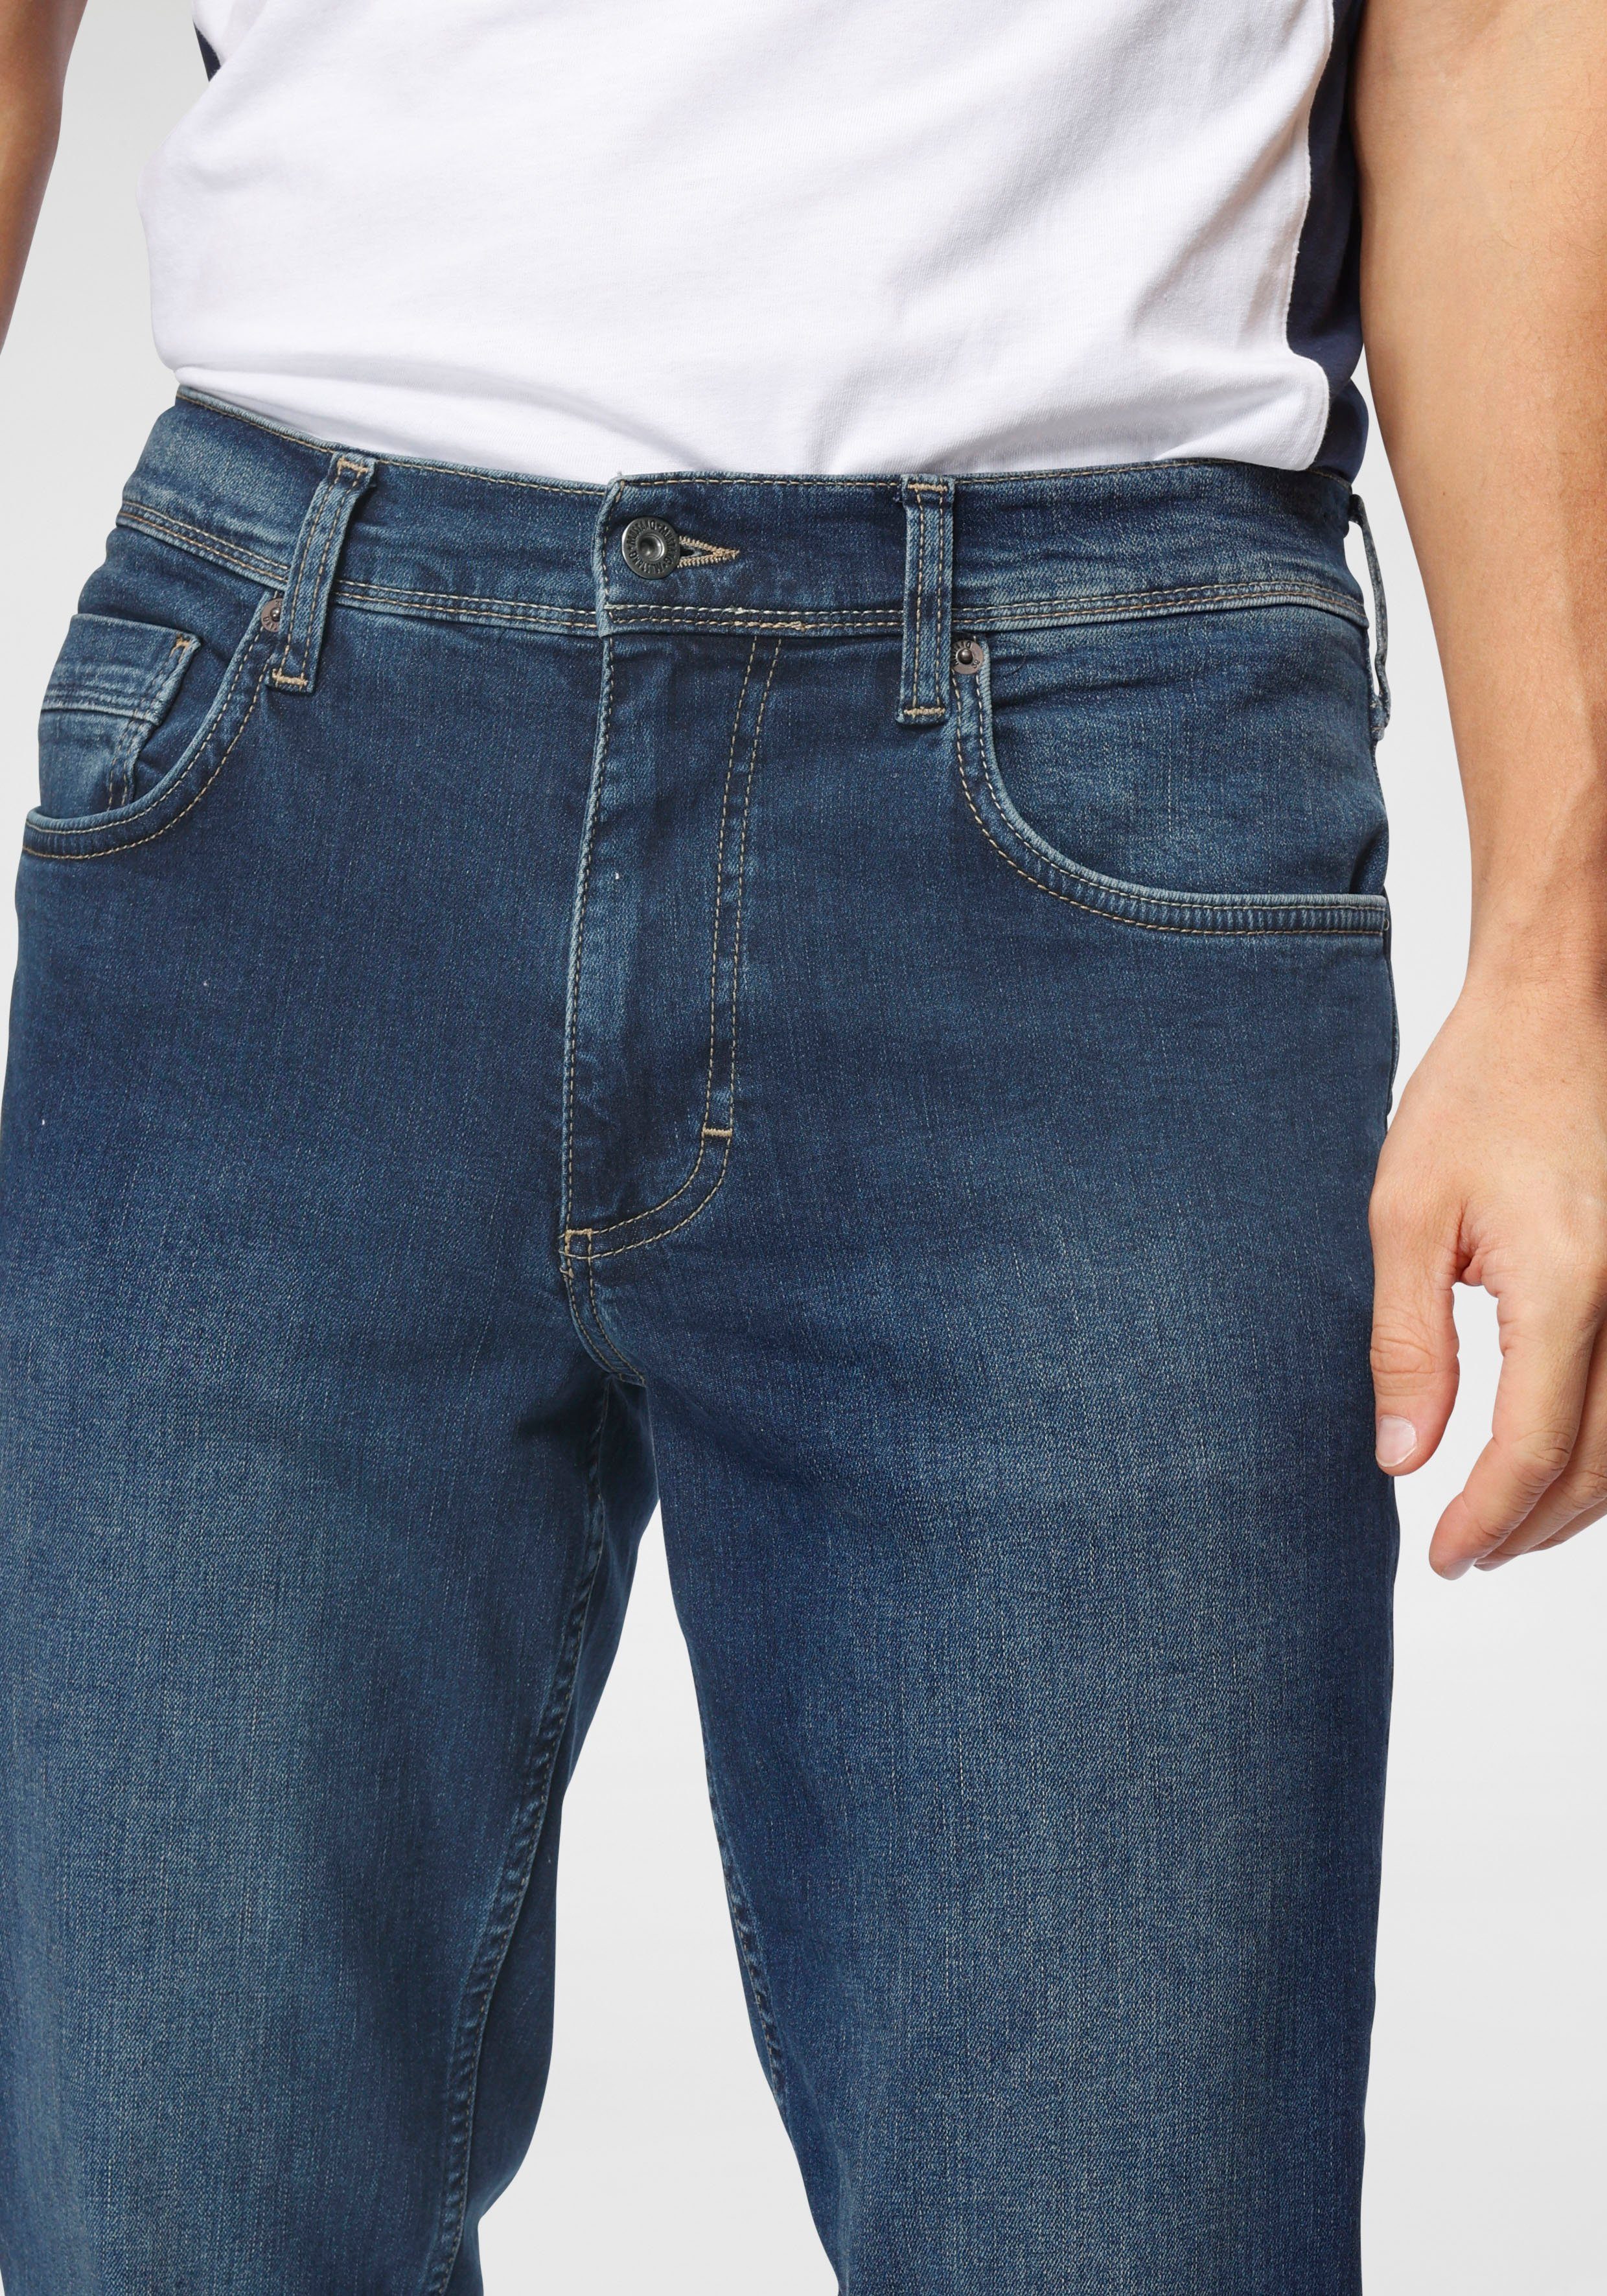 Washington dark MUSTANG leichten Style 5-Pocket-Jeans mit Straight Abriebeffekten